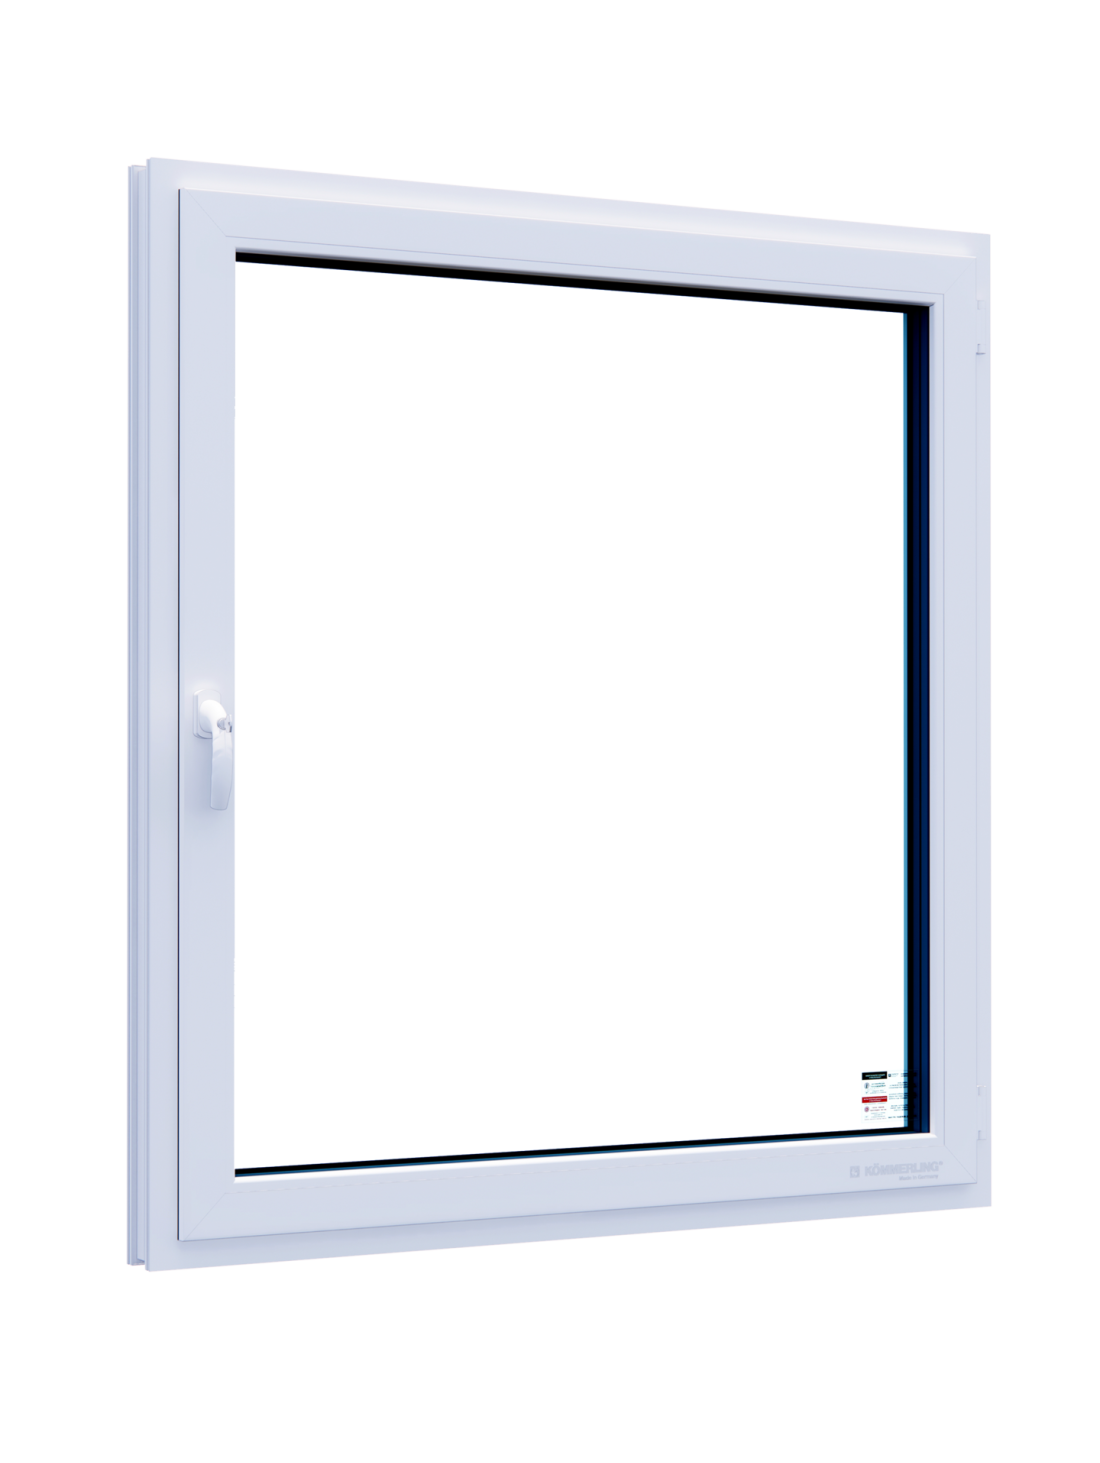 Противозламне панорамне біле металопластикове вікно ліцензія RC2N (8 точок замикання, загартоване скло) 1300х1400 мм